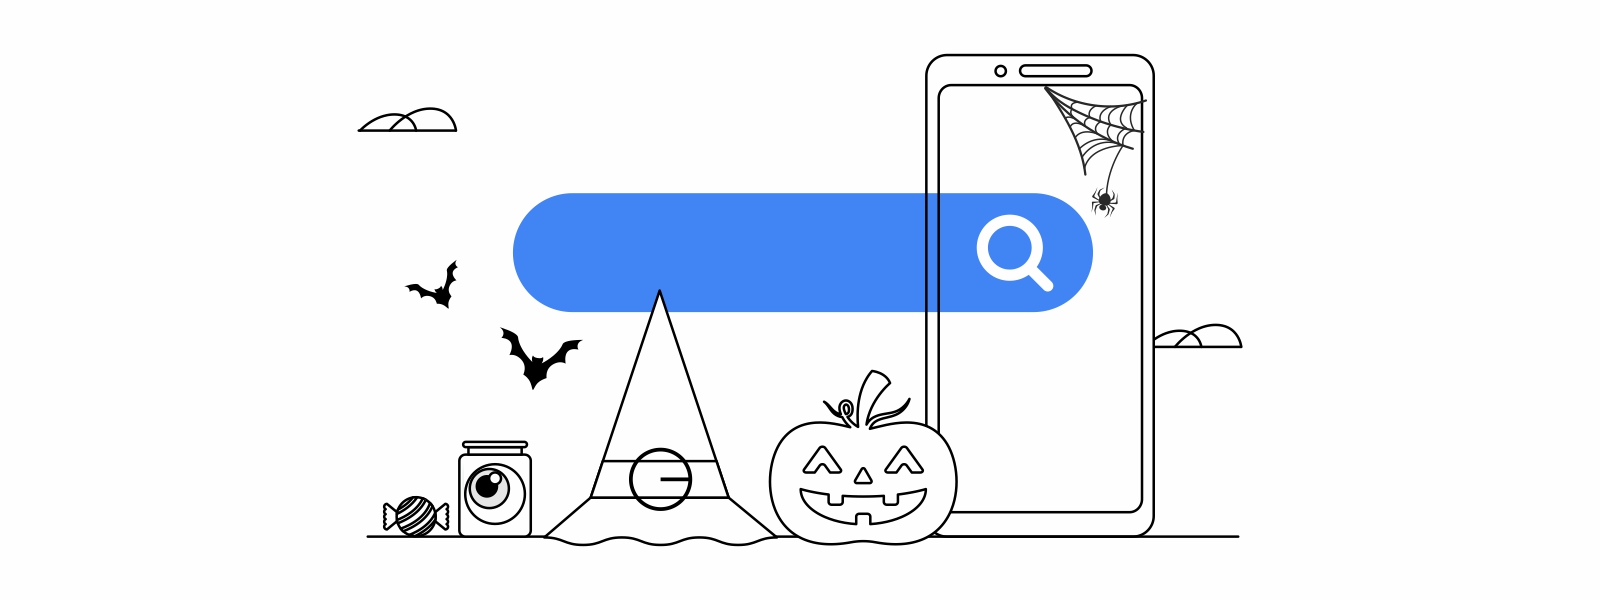 Un dispositivo móvil detrás de una barra de Búsqueda azul con una lupa. A la izquierda, un sombrero de bruja, una calabaza, dos murciélagos y unos dulces.